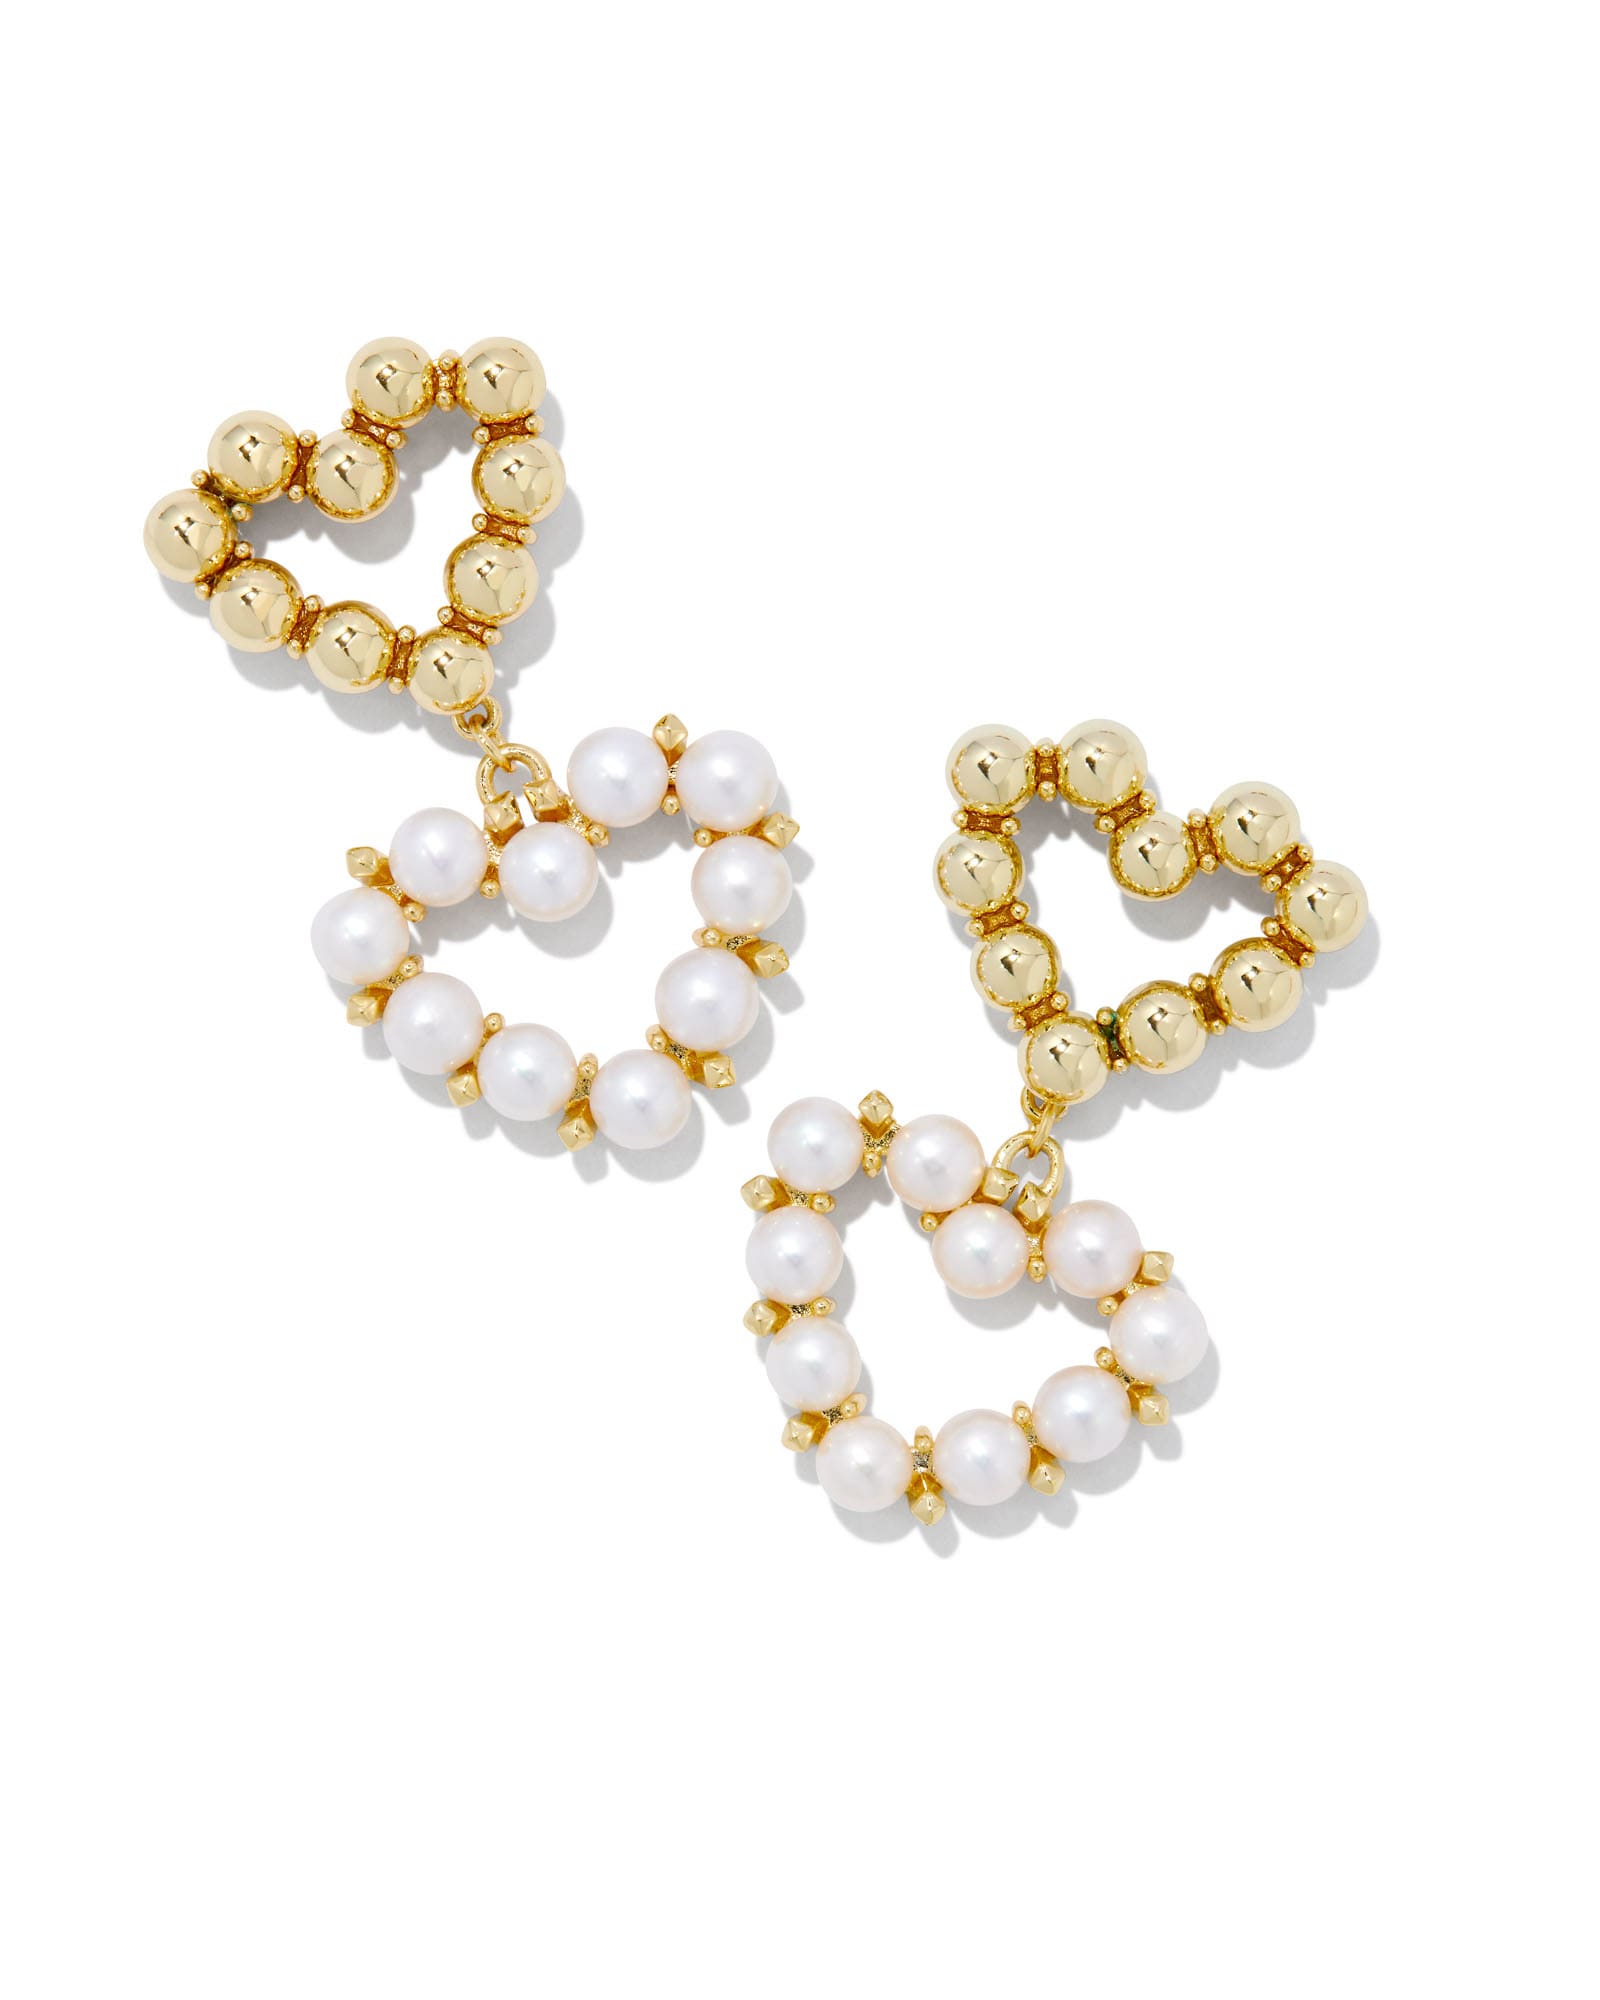 Ashton Gold Heart Drop Earrings in White Pearl | Kendra Scott